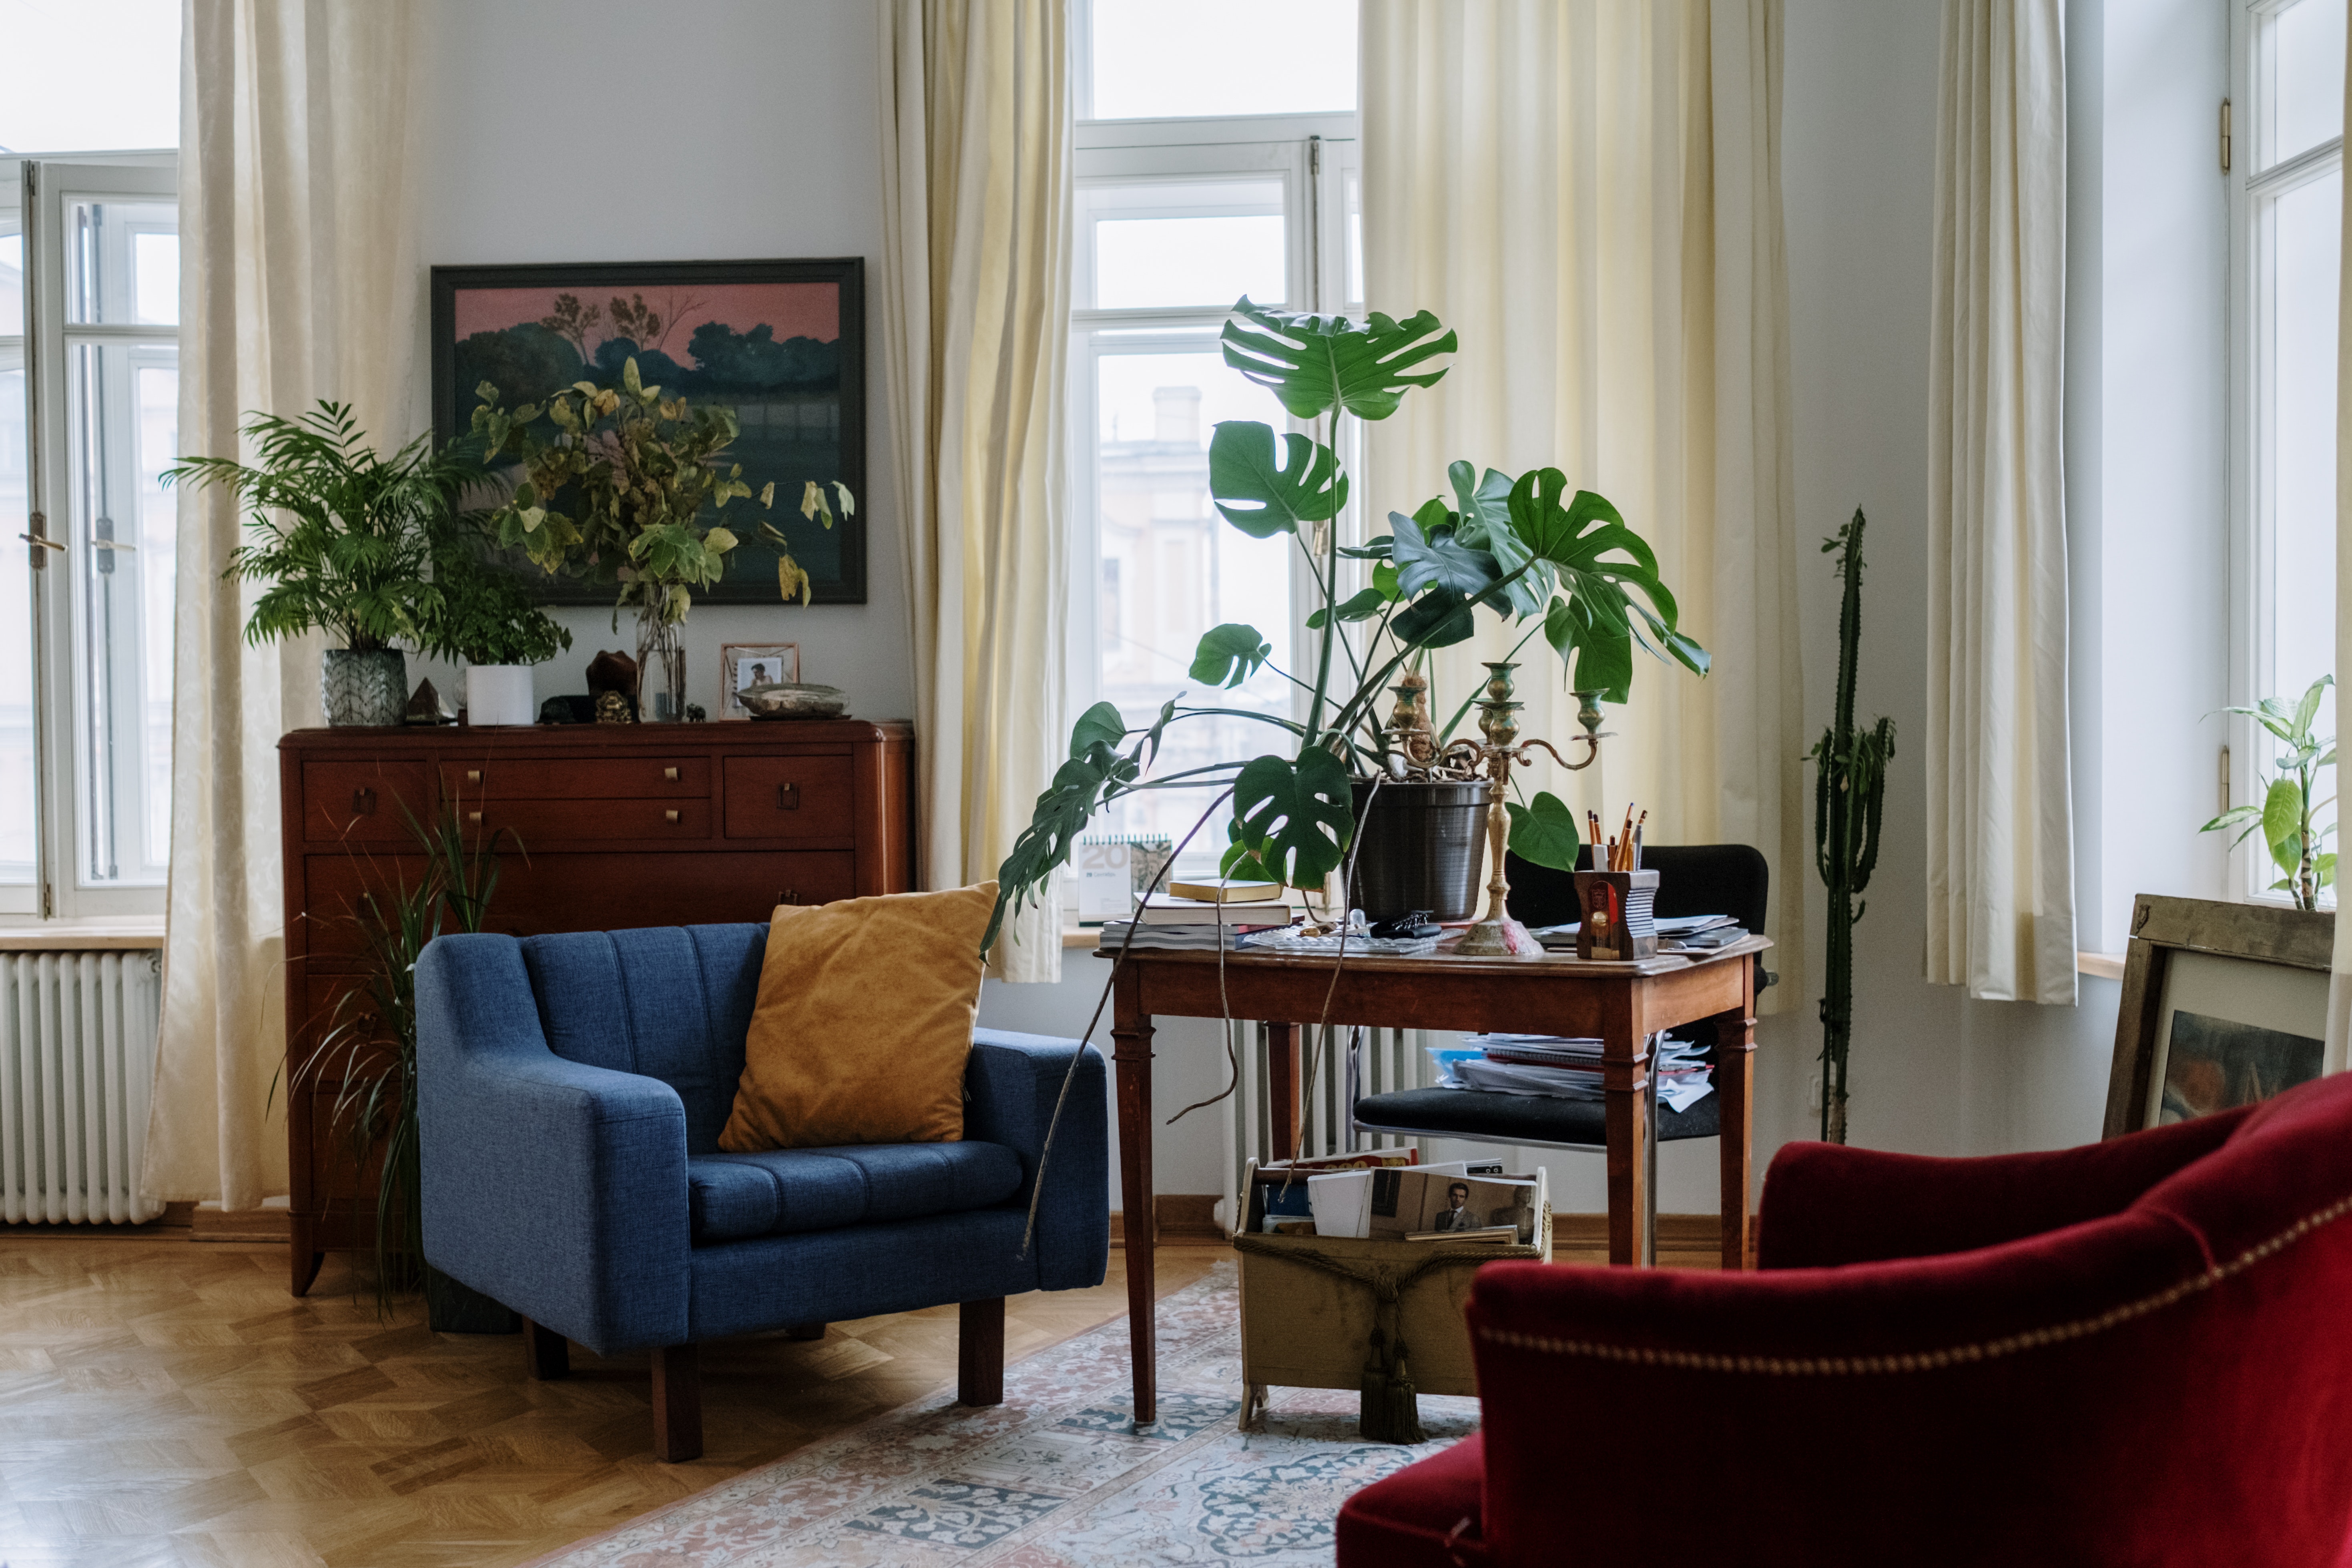 Airbnb hosting etiquette